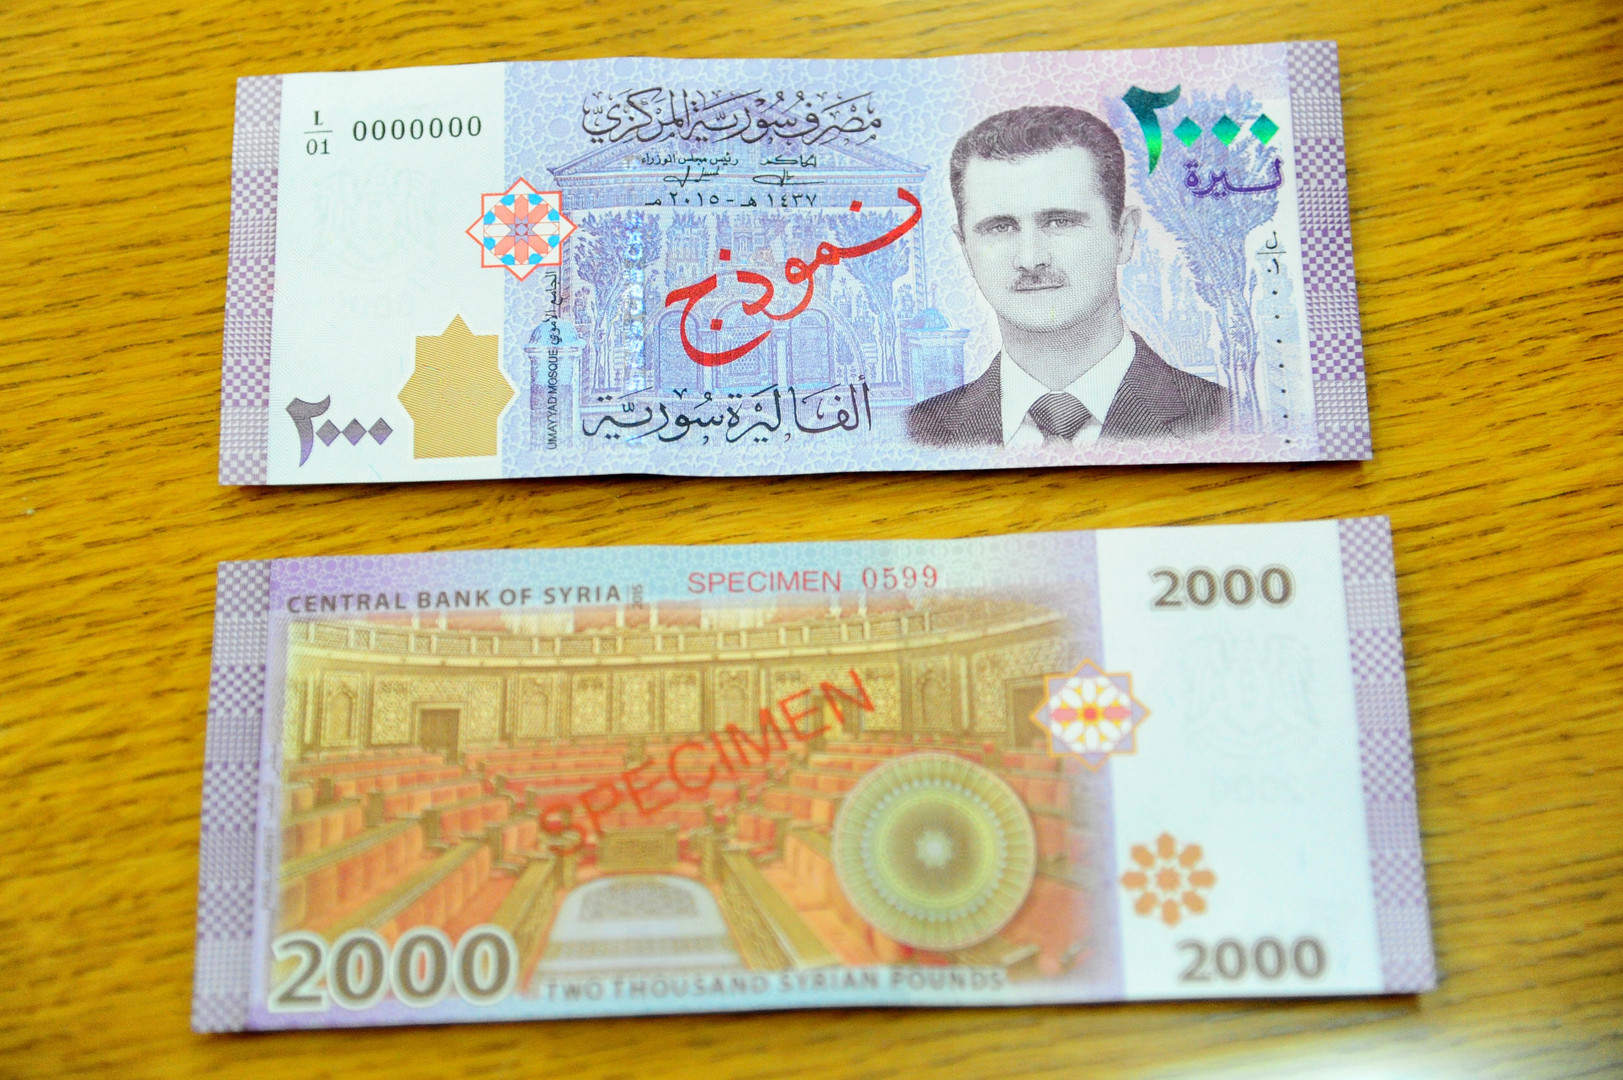 دام برس : دام برس | كيف تقبّل الشارع السوري الـ 2000 ليرة .. وهل إشاعة صدور عملة بقيمة أكبر صحيحة ؟